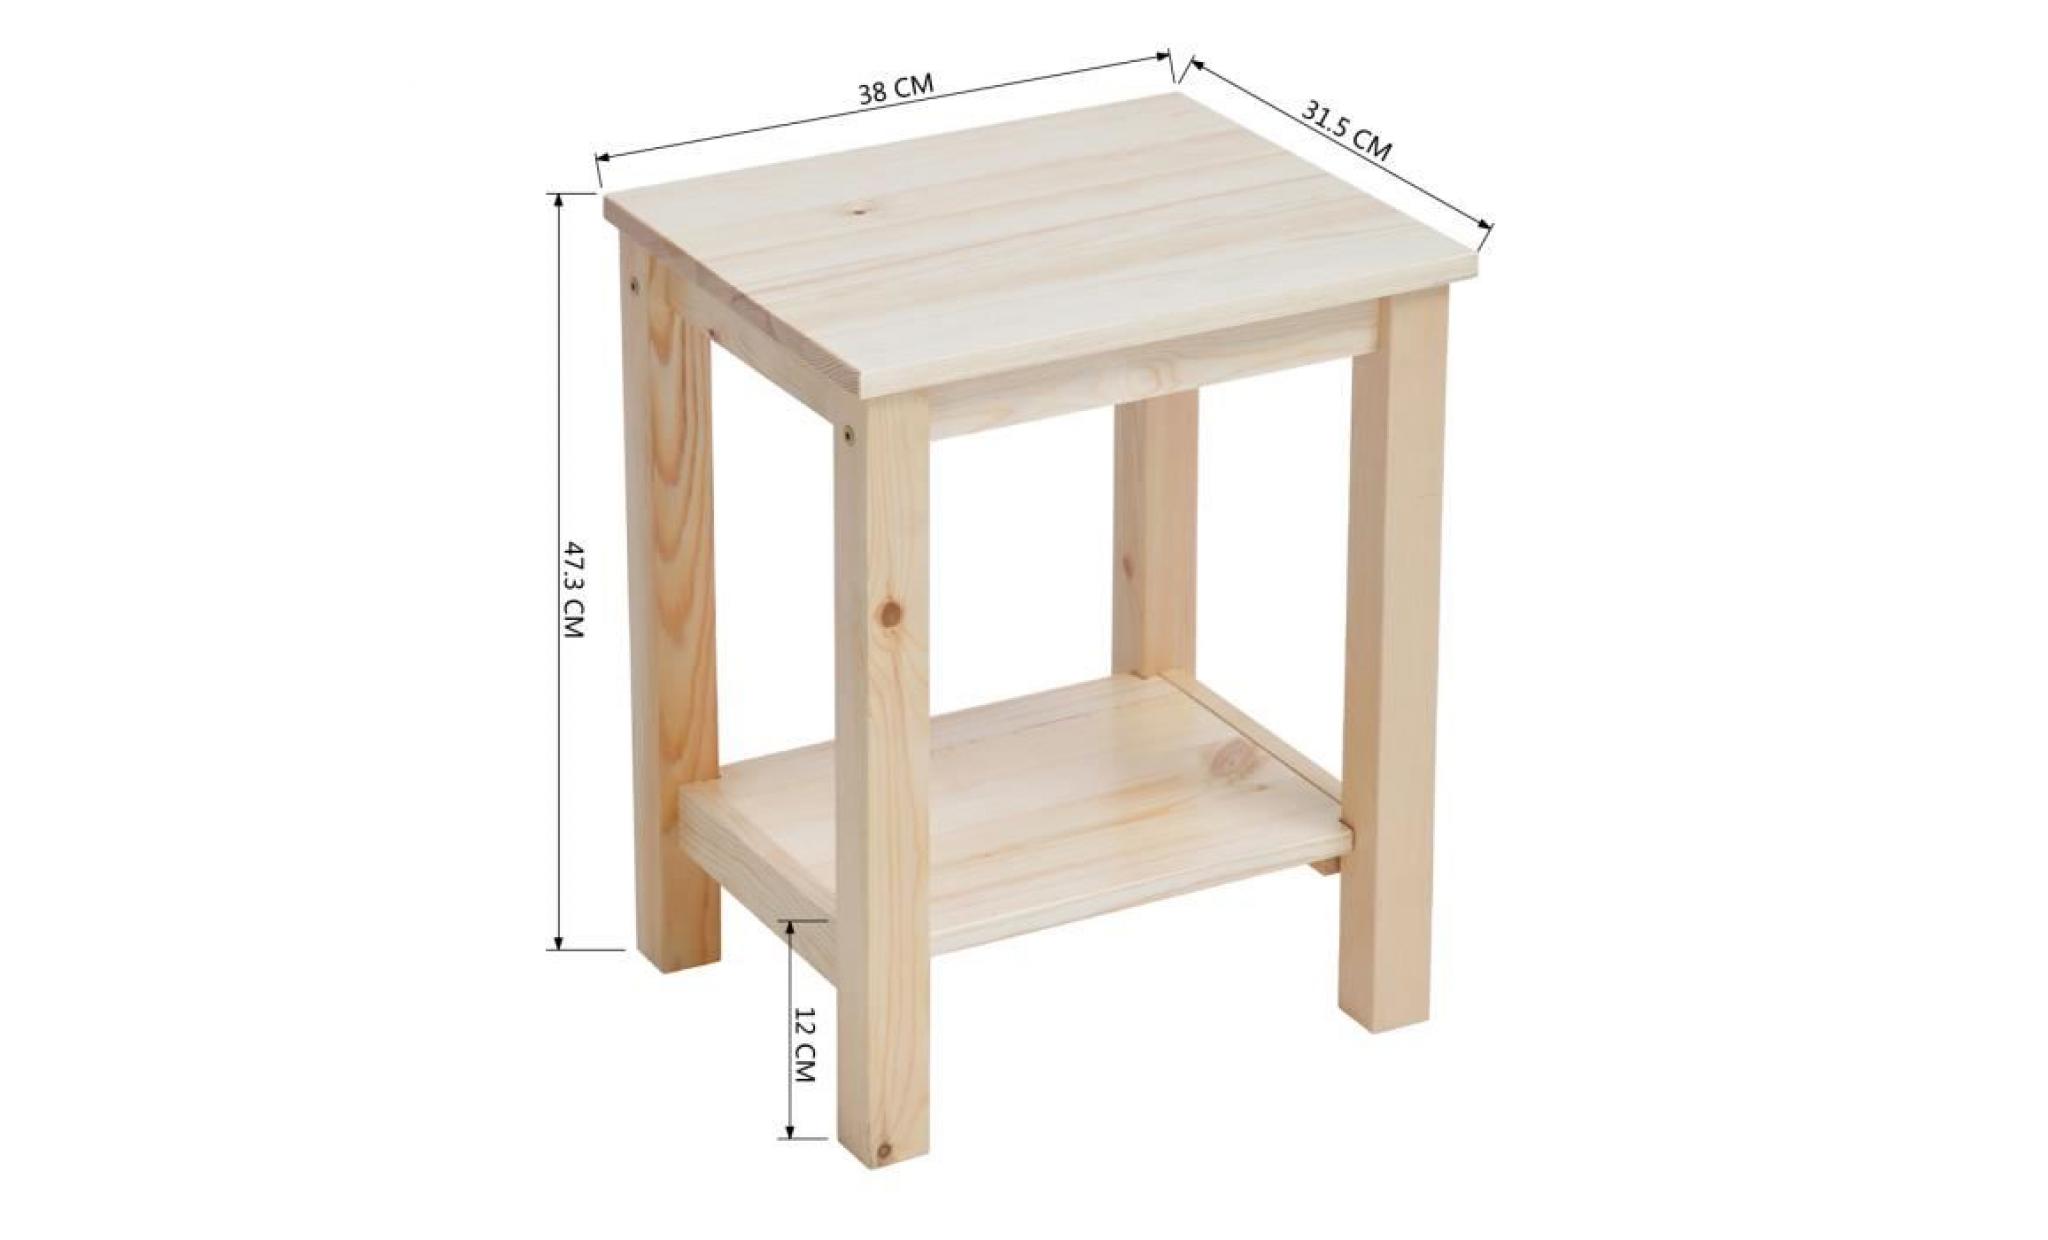 lot de 2 tables de chevet beige   tables de nuit scandinaves  en bois   homy casa   avec rangement   38 x 31.5 x 47.3 cm pas cher